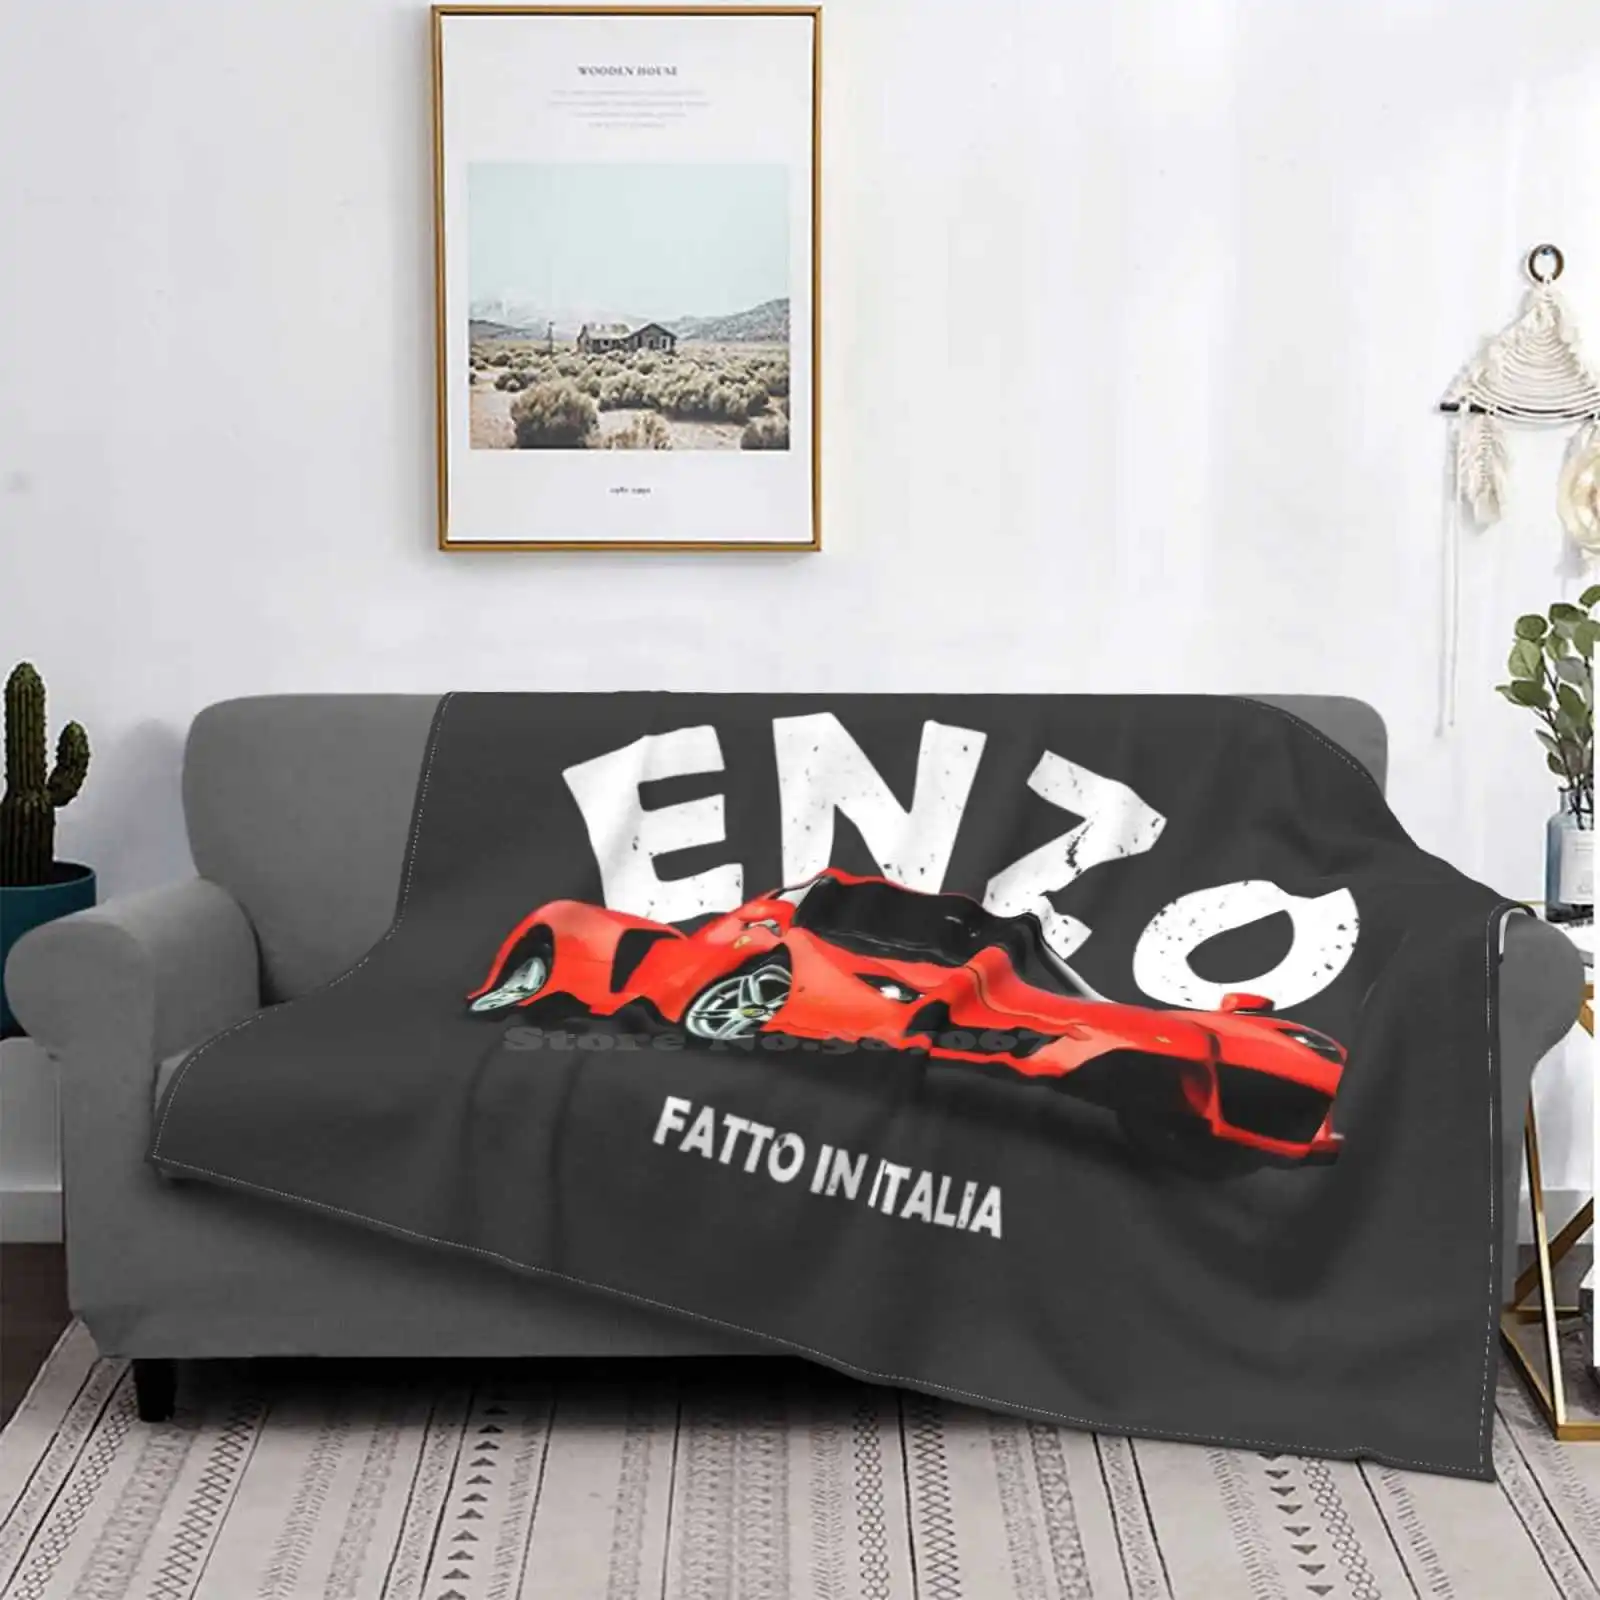 

Enzo, лидер продаж, комнатное домашнее фланелевое одеяло, автомобиль, суперкар, спортивный автомобиль, итальянский транспорт Enzo